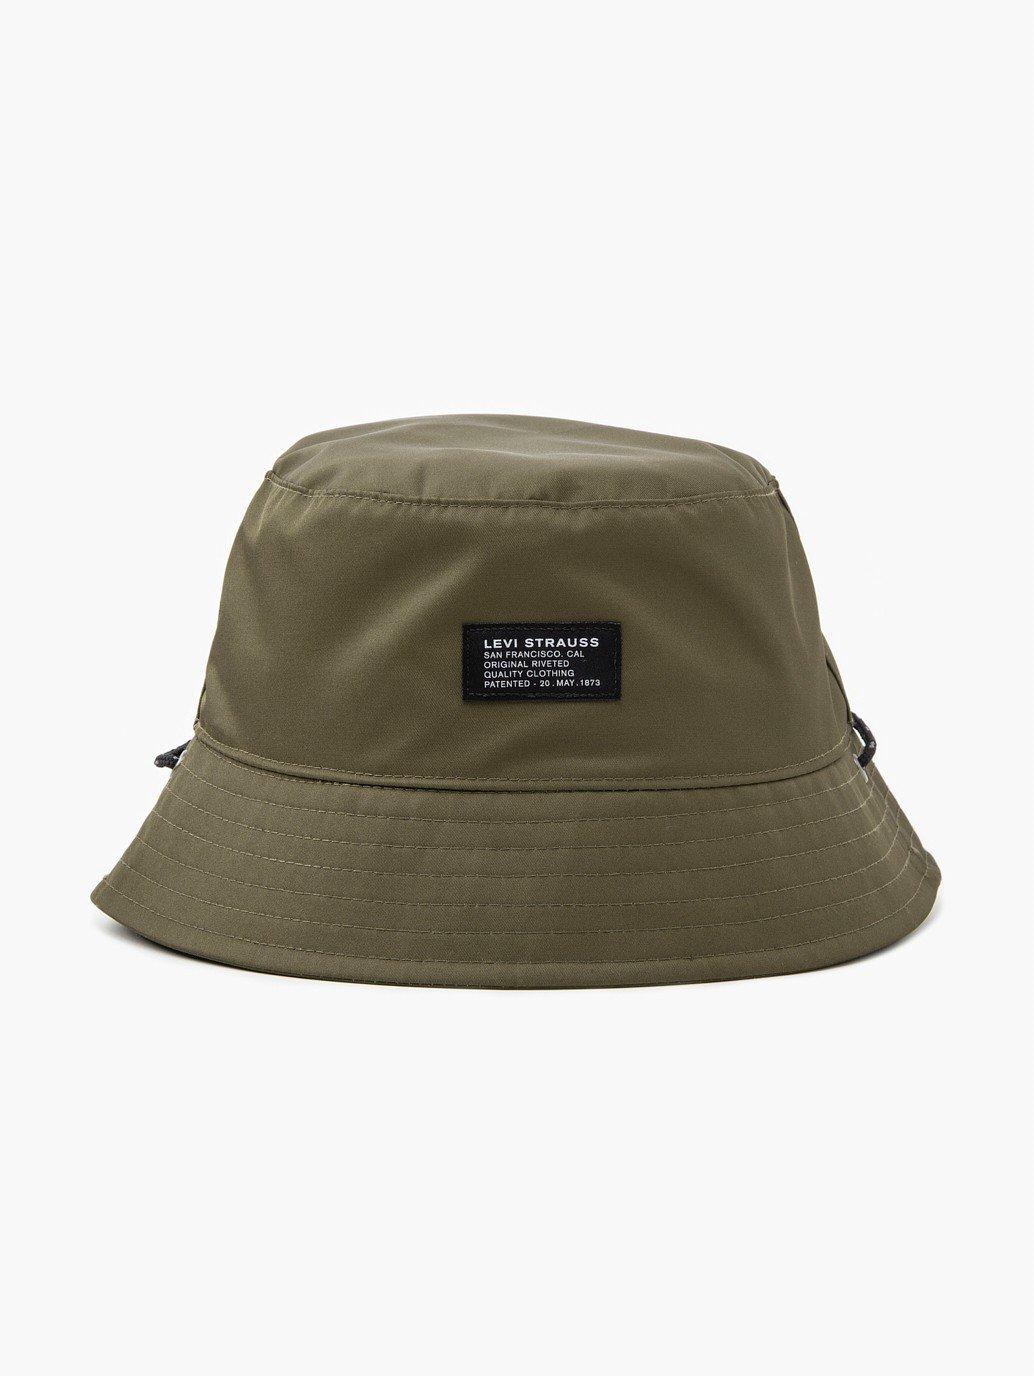 Buy Levi's® Men's Utility Bucket Hat | Levi’s® Official Online Store SG